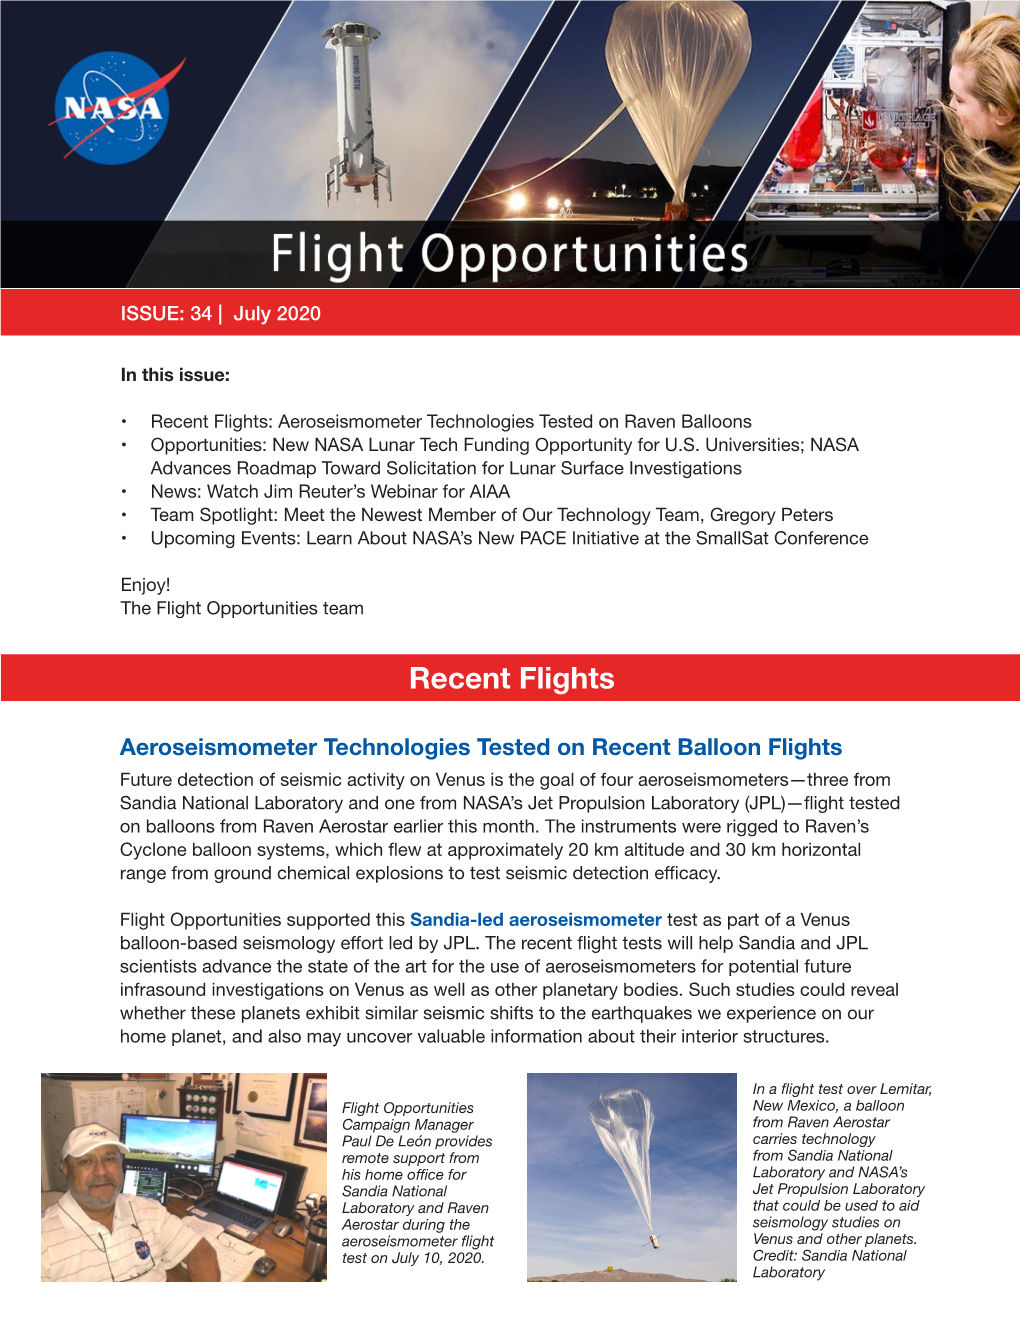 Flight Opportunities Newsletter July 2020